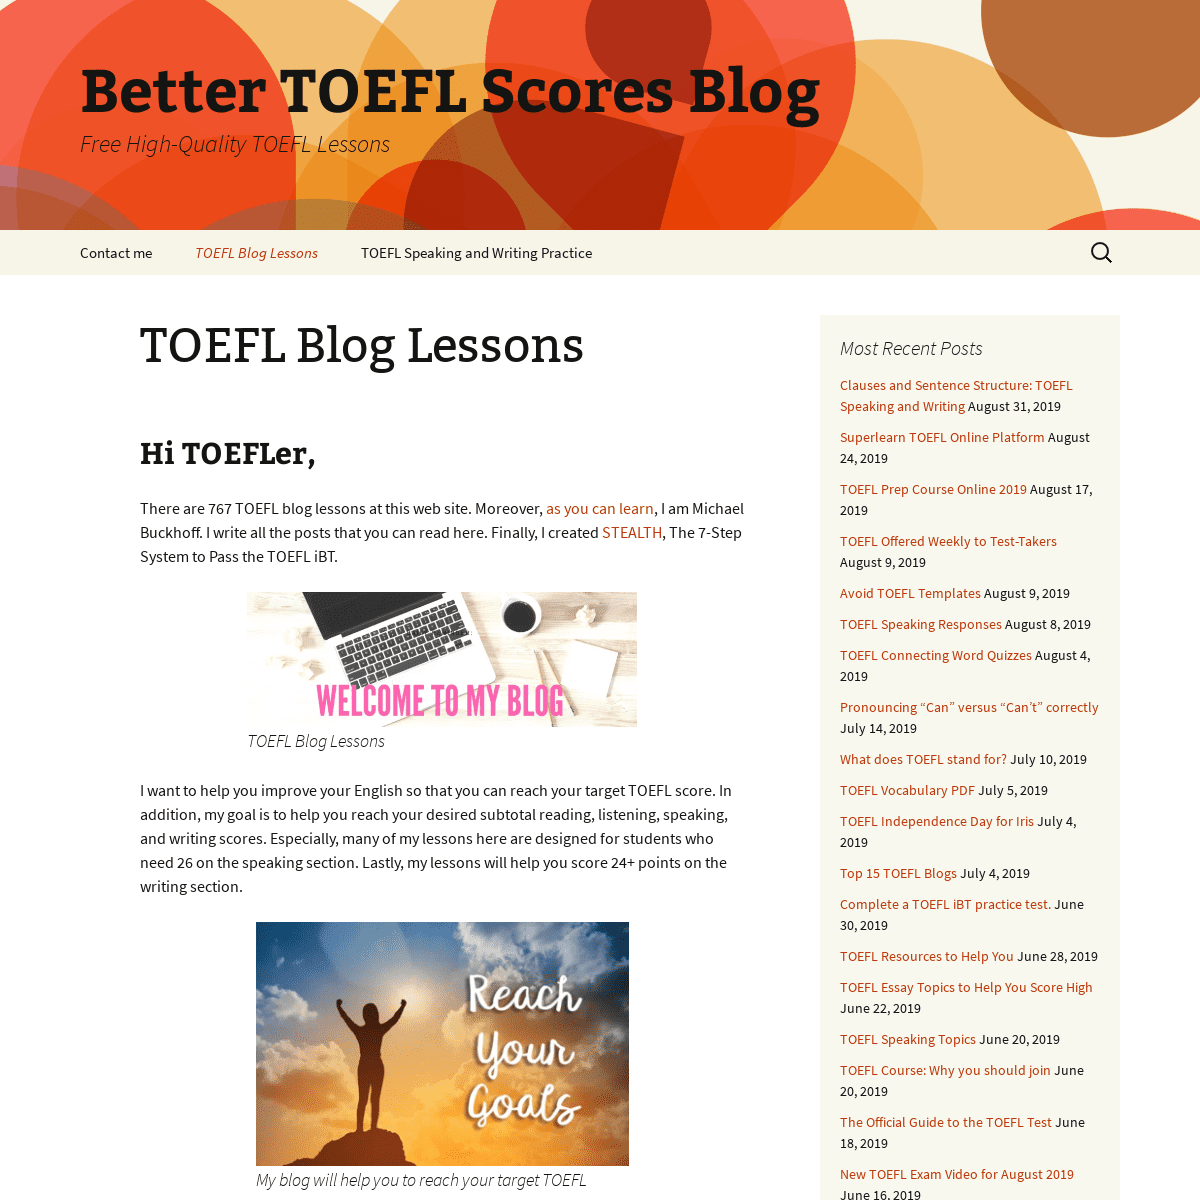 TOEFL Blog Lessons - Better TOEFL Scores Blog